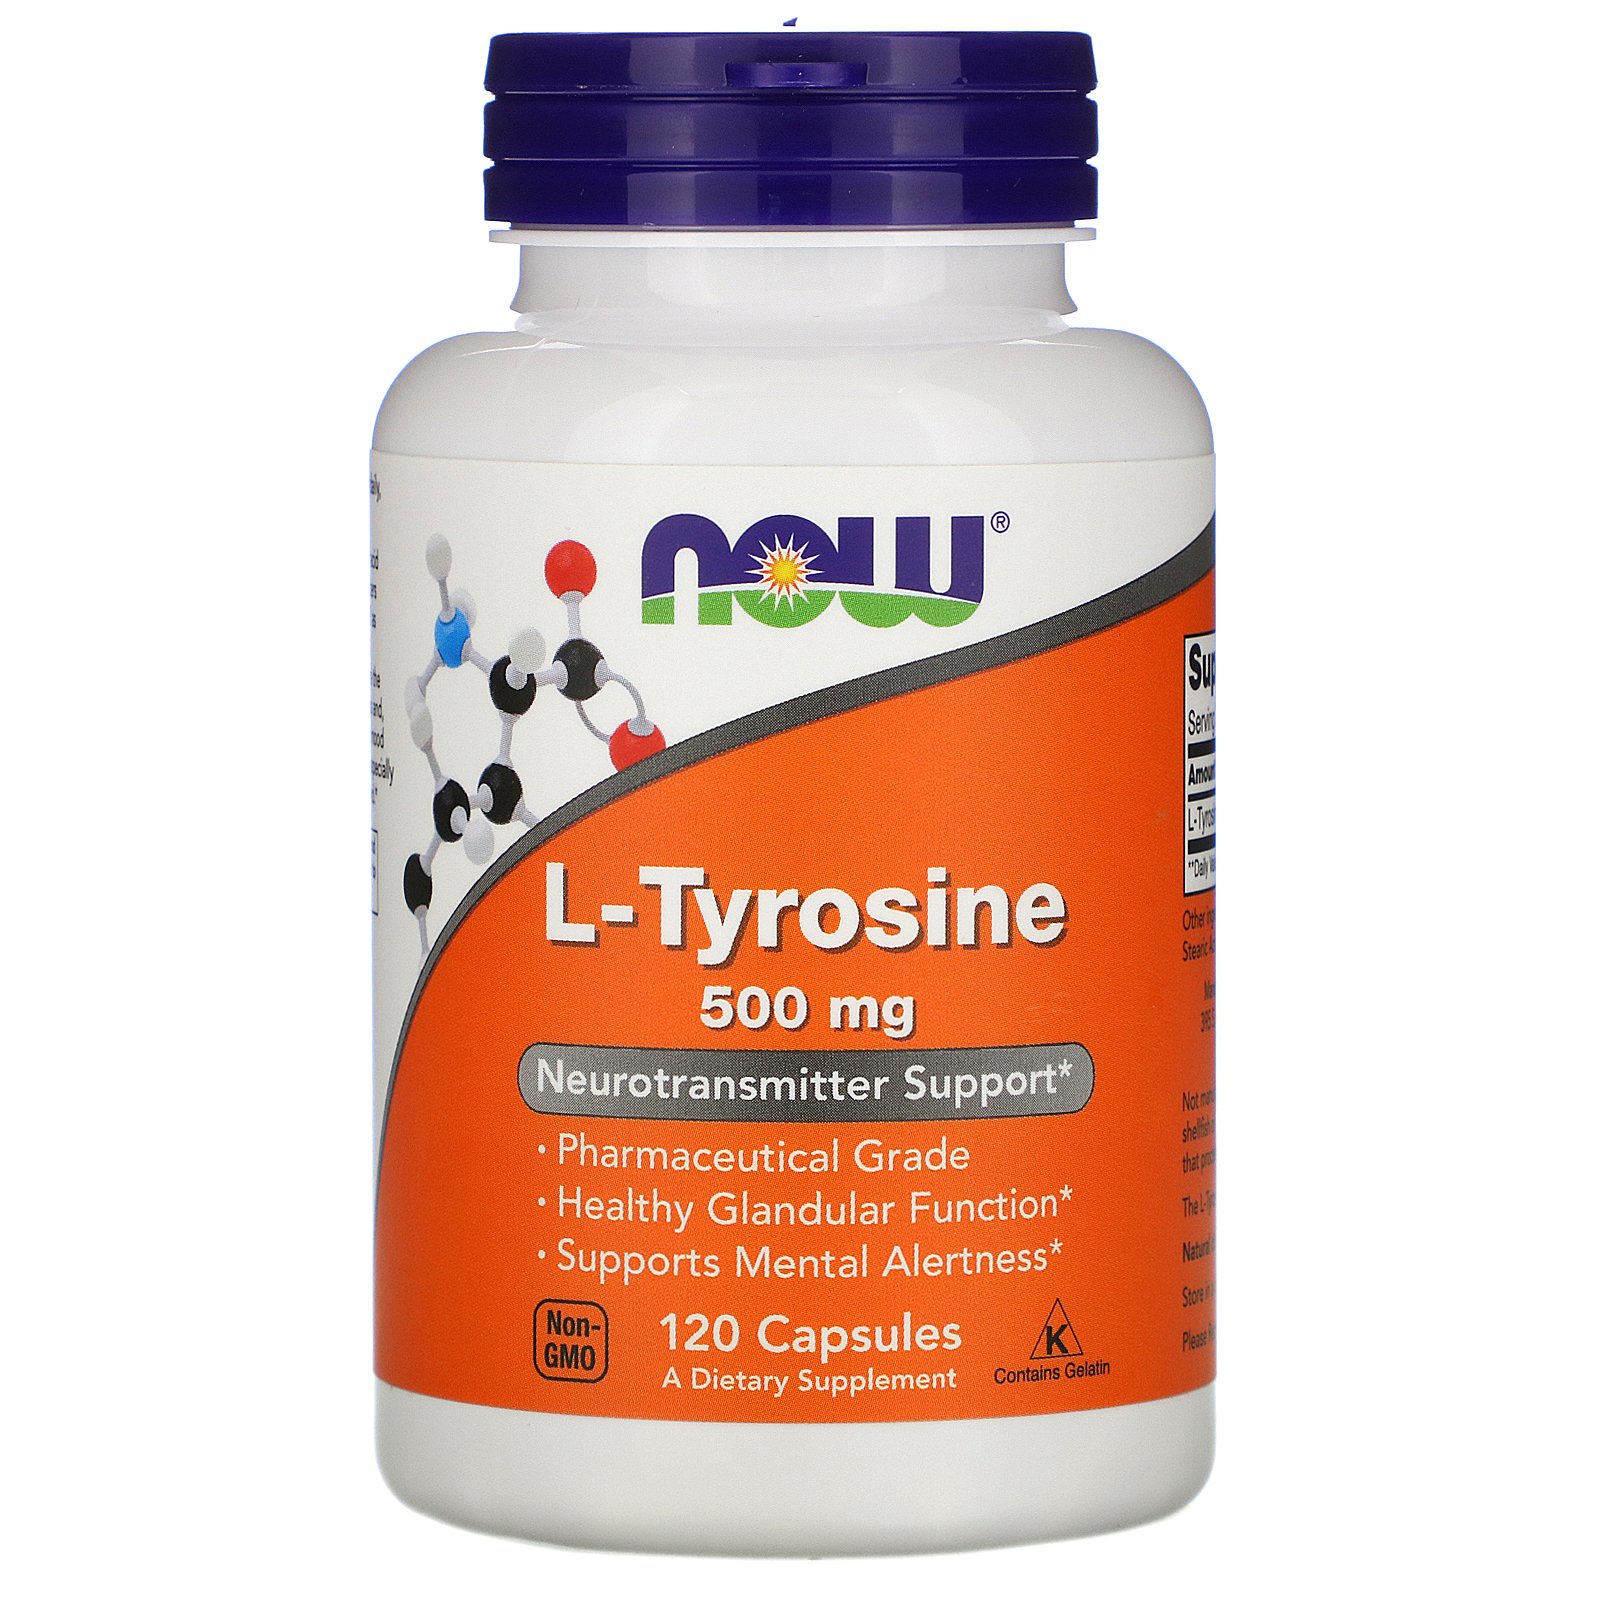 Акция, L-Tyrosine 500 мг - 120 капсул (Поврежденная этикетка)